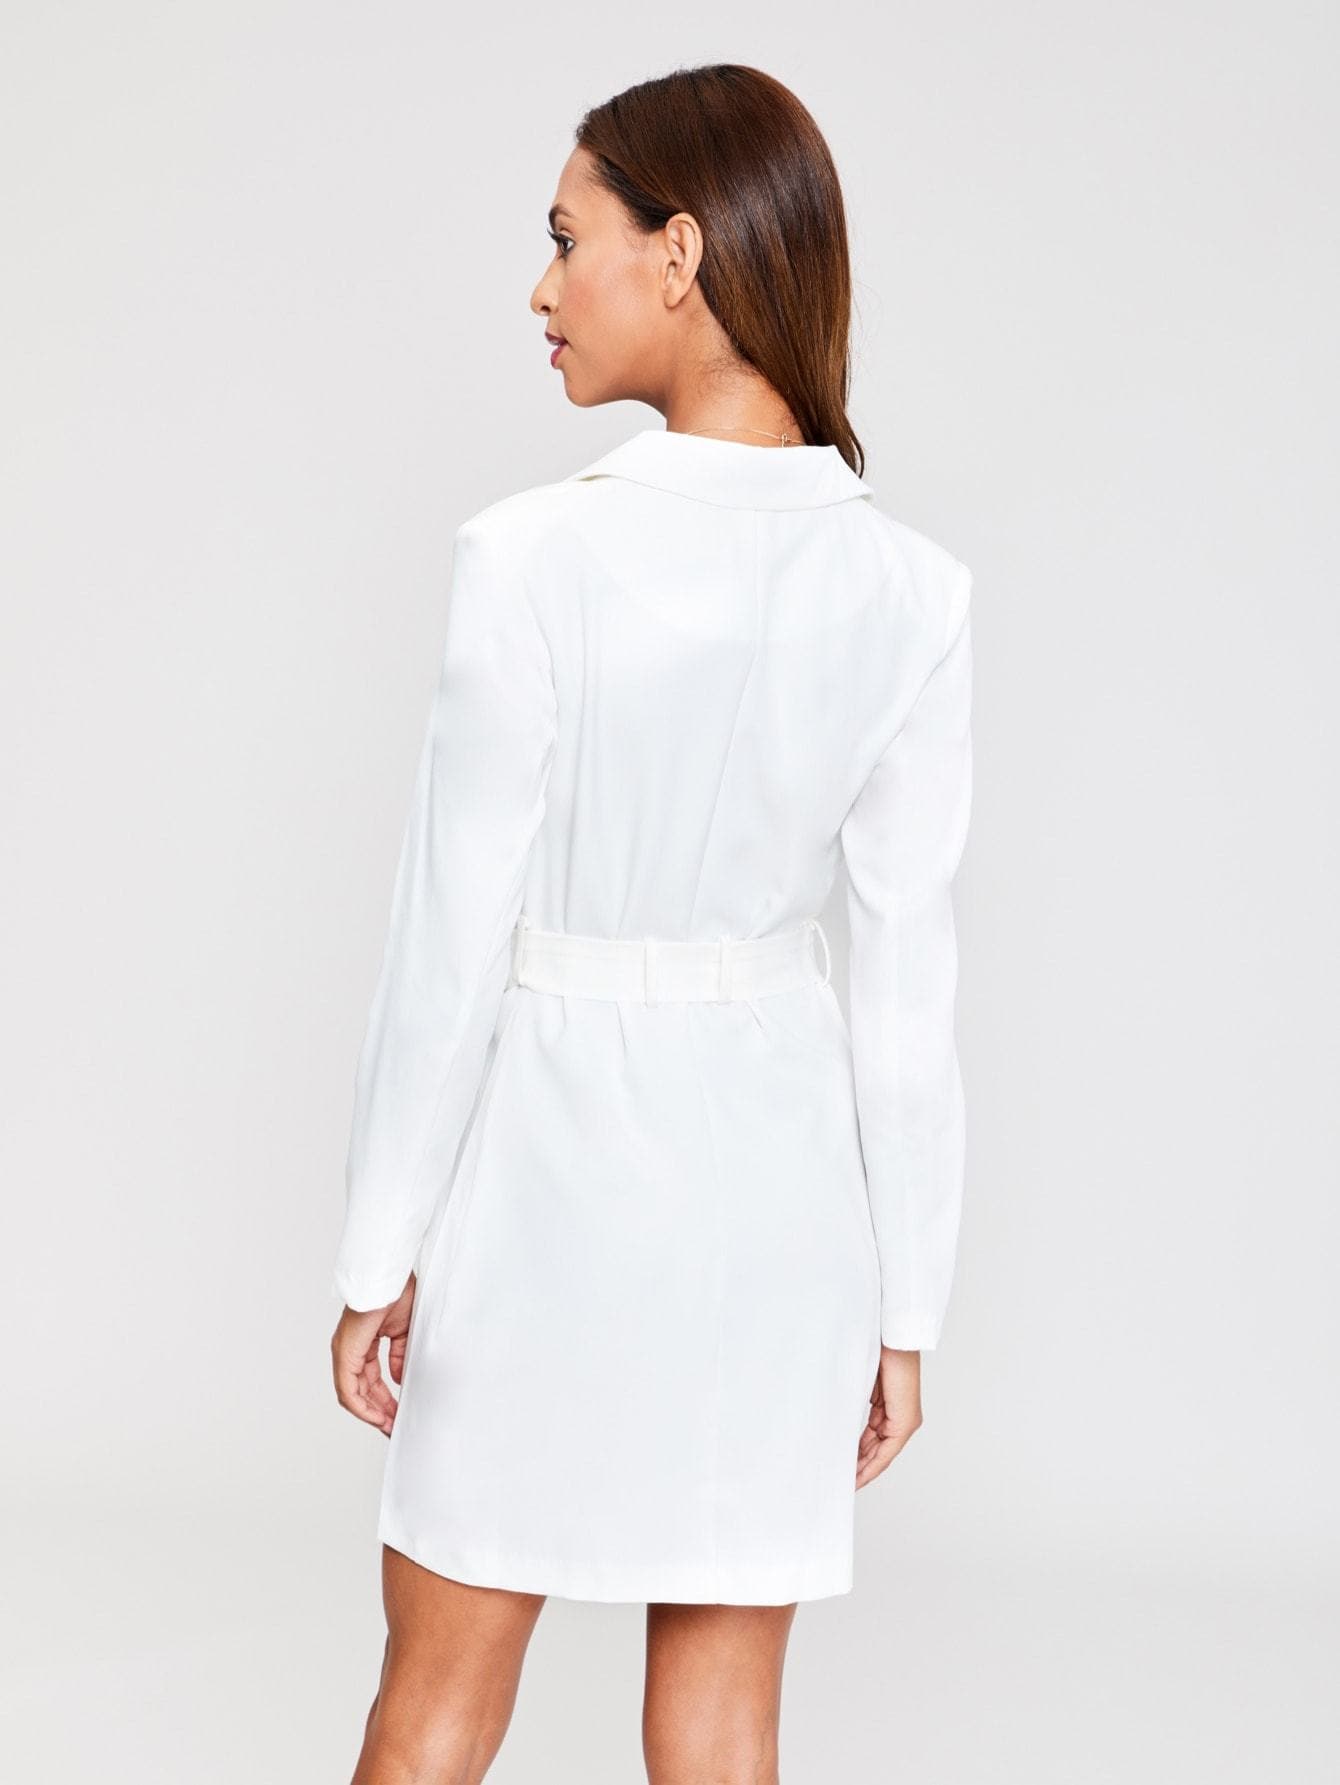 White V Neck Self Belted Solid Blazer Dress